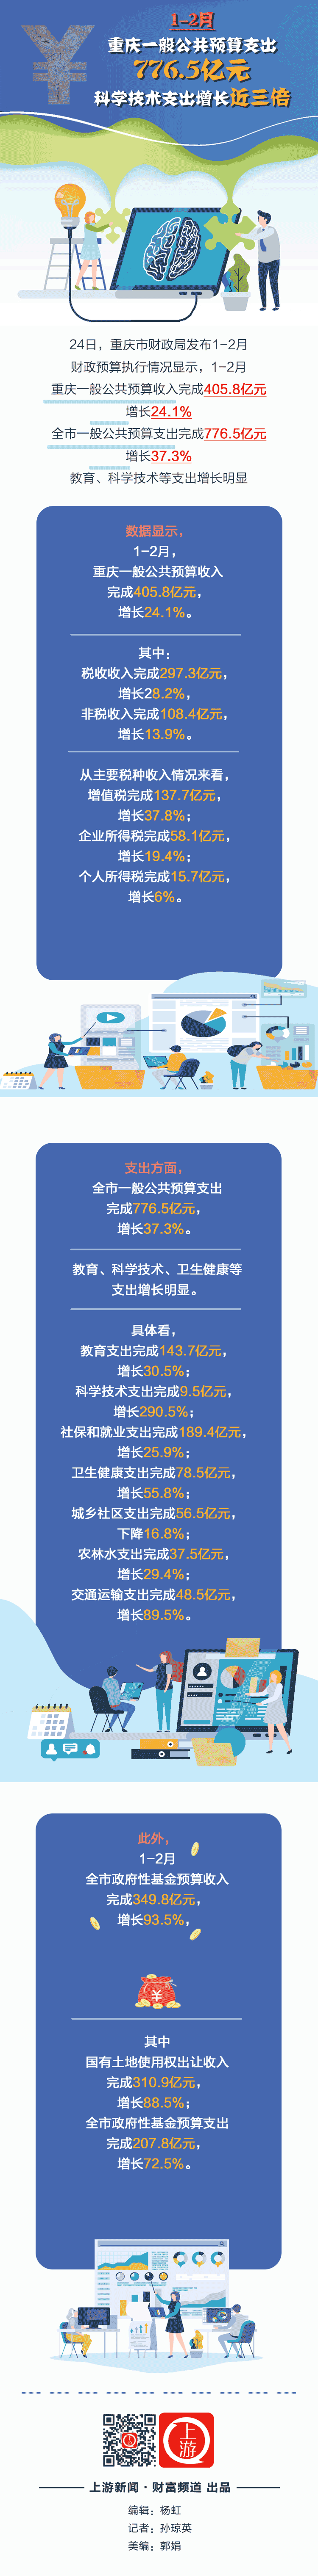 1-2月重庆一般公共预算支出20210325.gif